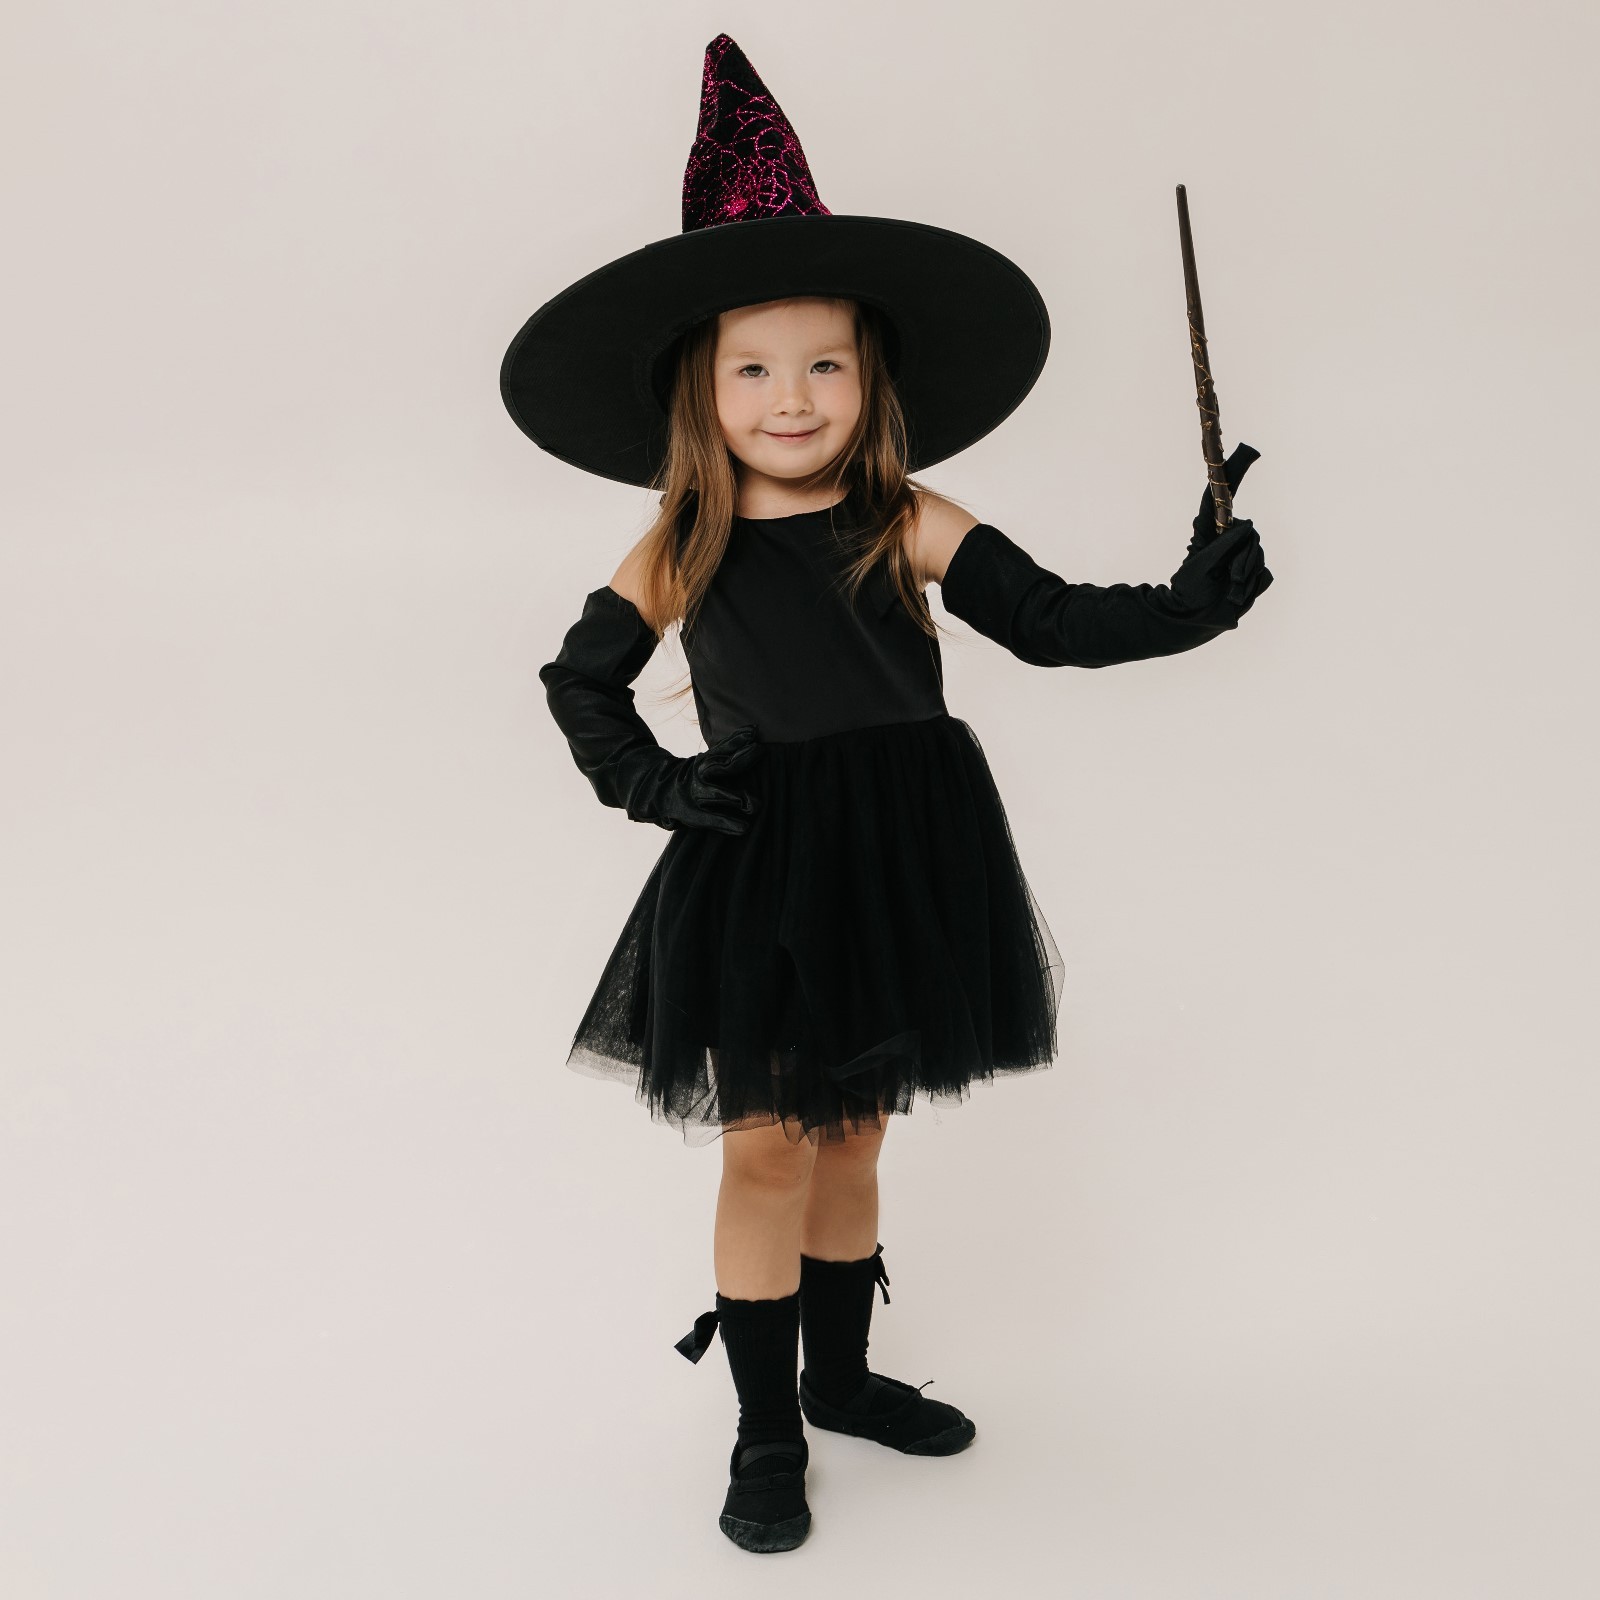 Карнавальный костюм Волшебная маска Могущественная ведьма, розовый, черный, onesize travis designs карнавальный костюм волшебник со шляпой